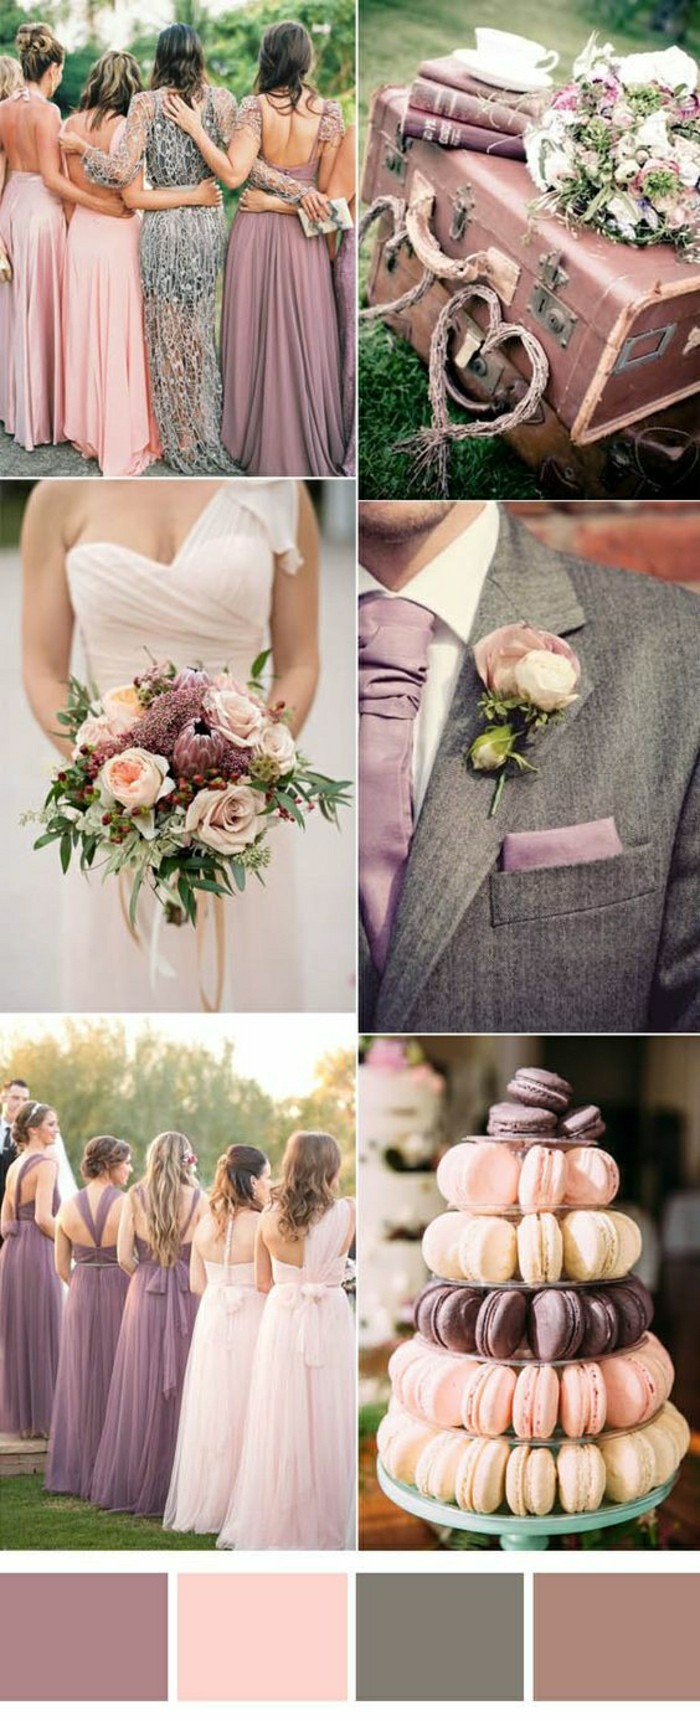 00-mariage-thematique-couleur-violette-rose-gis-biege-quelle-theme-mariage-couleur-choisir